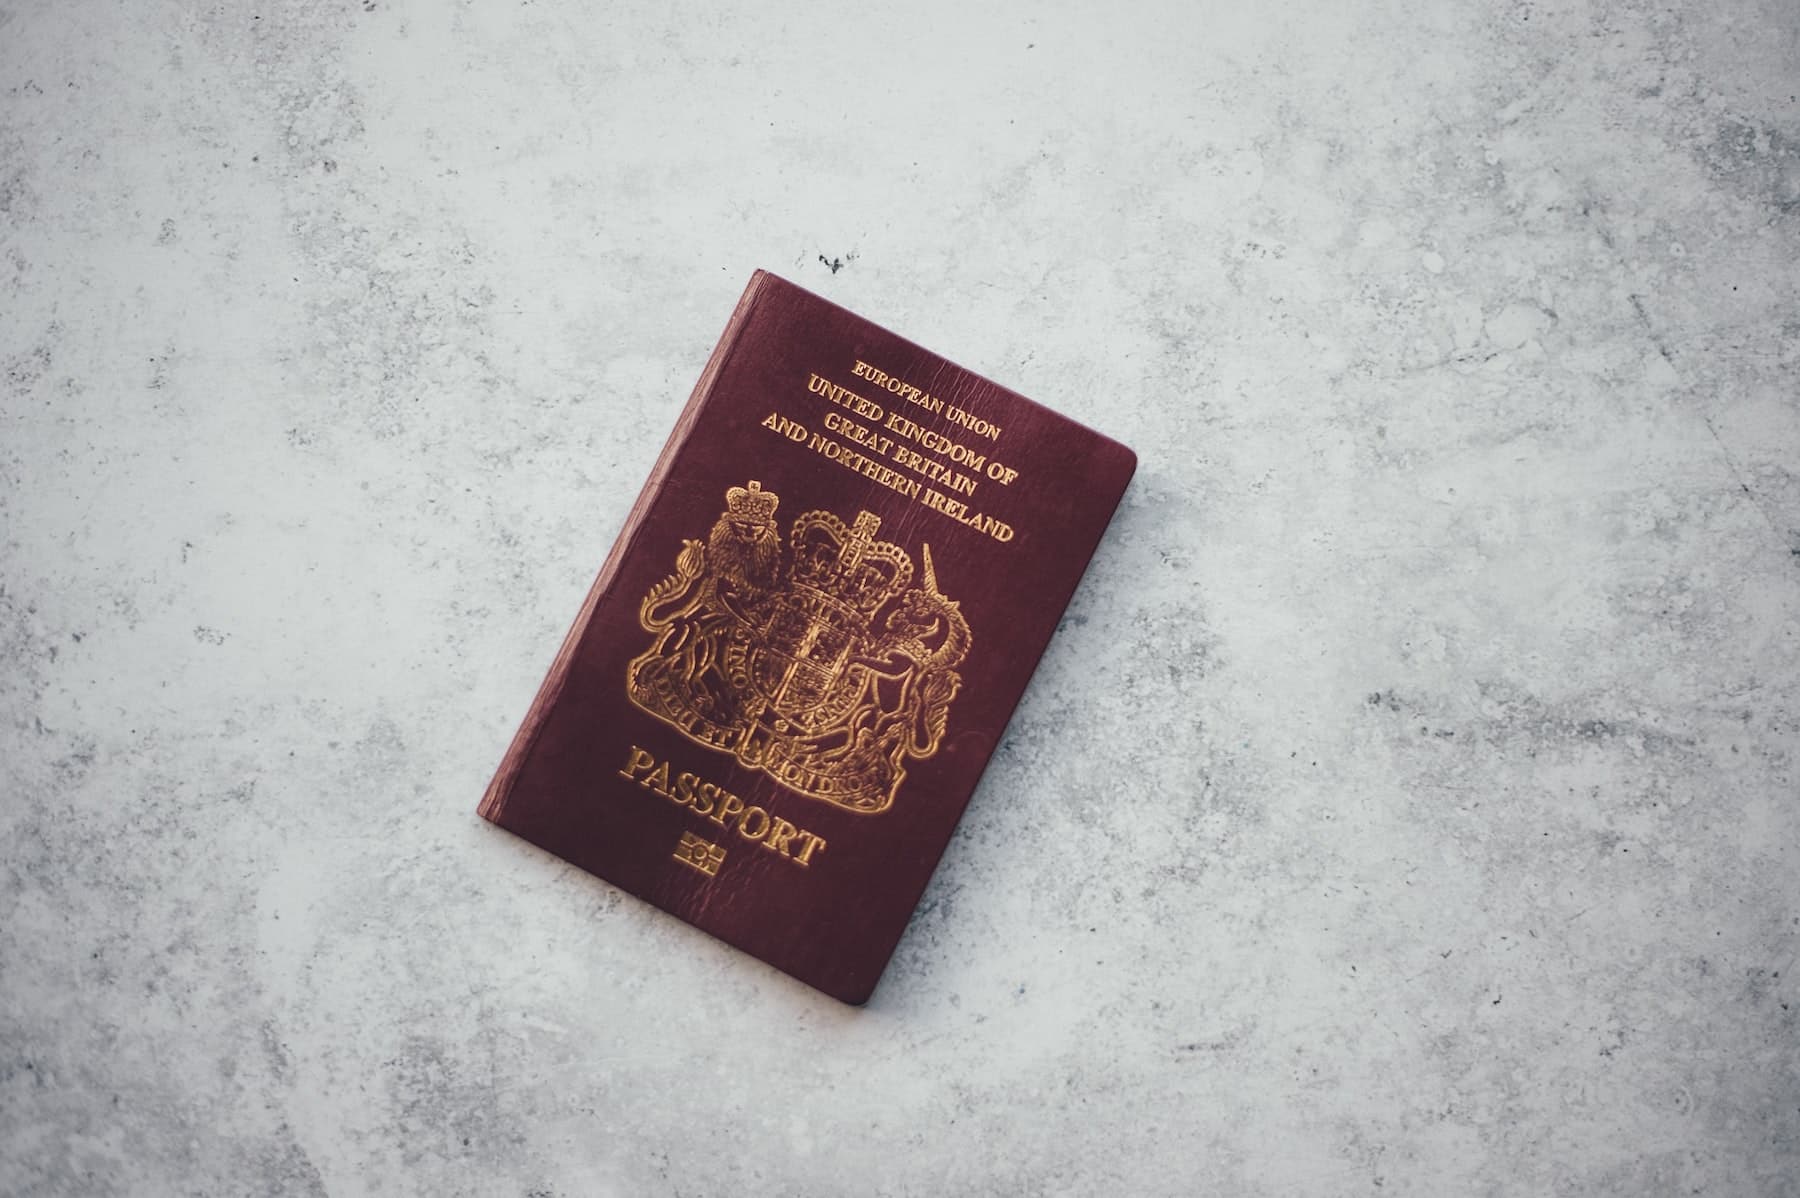 New Passport British - Will my Burgundy passport still be valid?